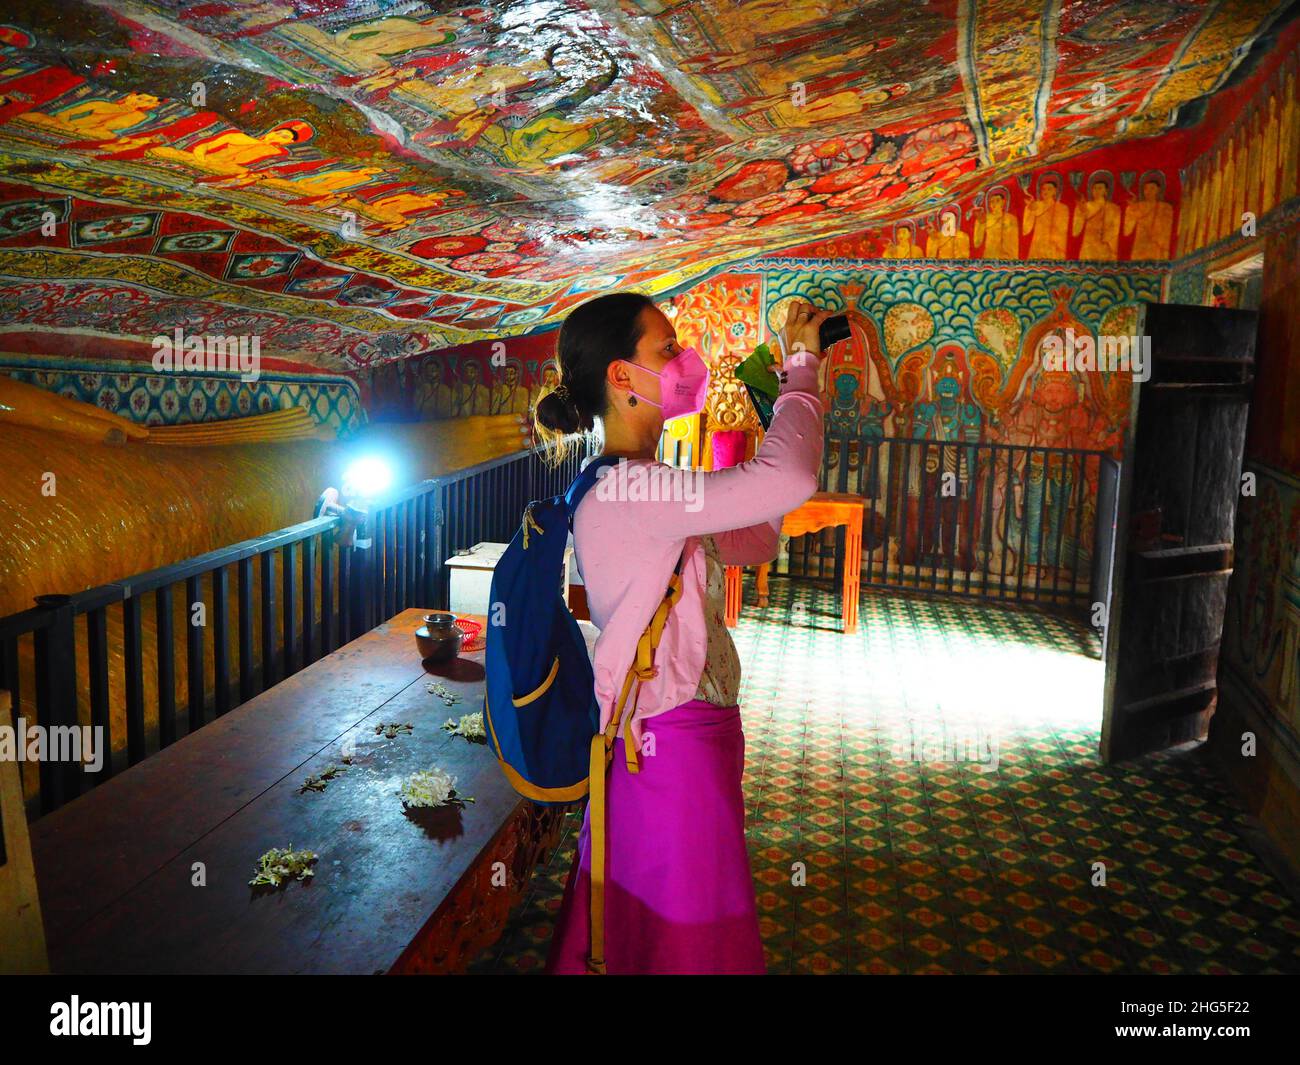 Mädchen mit FFP2 Gesichtsmaske im Tempel, Reise Südostasien #authentisch #fernweh #slowtravel #stayinspired #TravelAgain #Corona #FFP2 #Maske #Covid19 Stockfoto